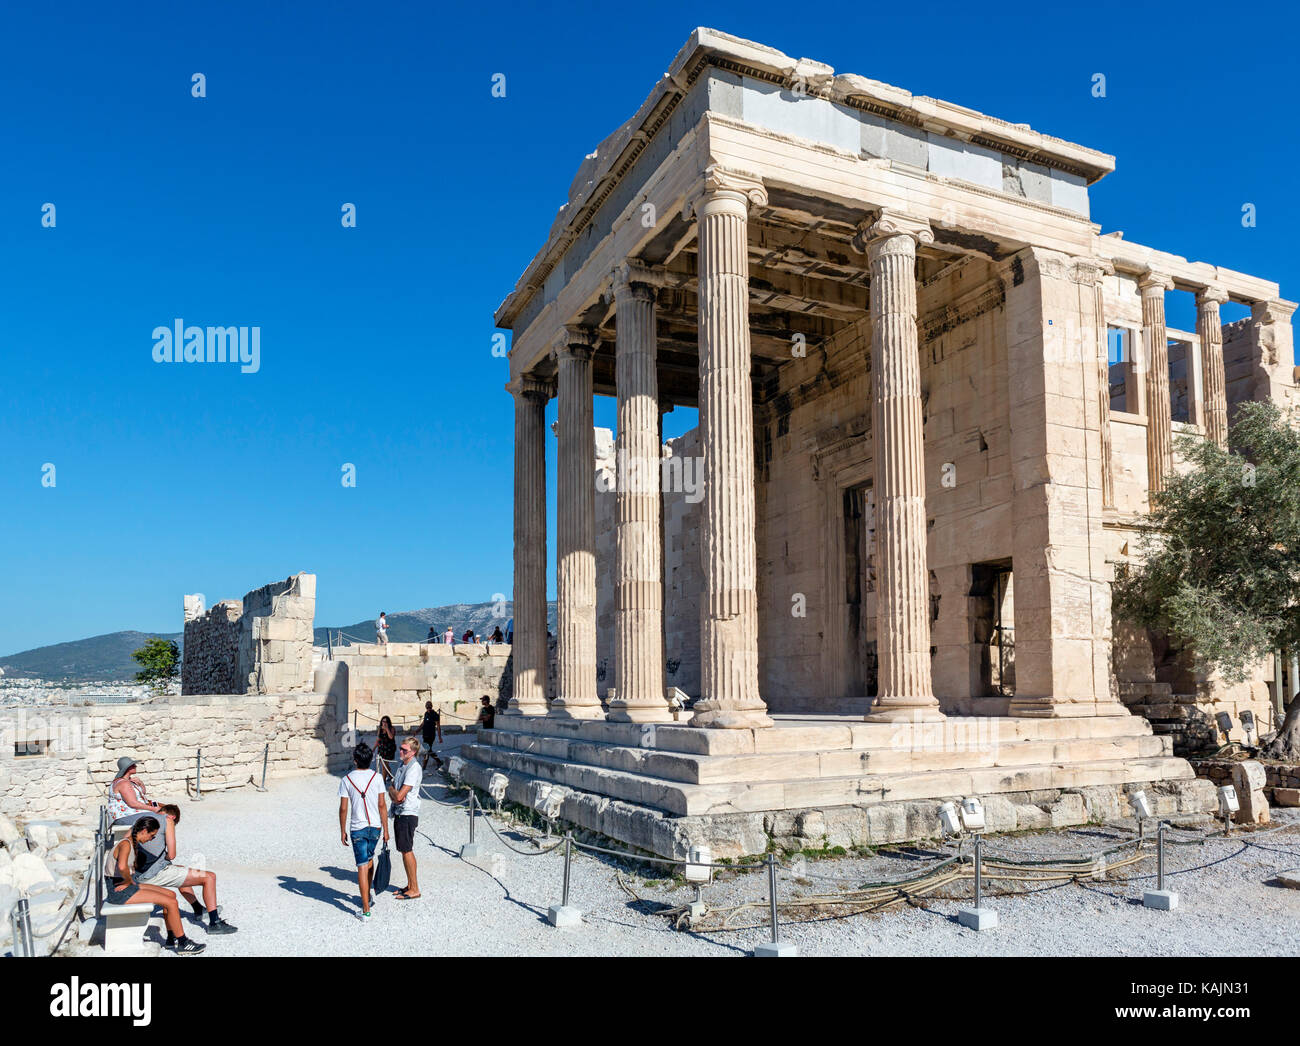 L'Erechtheion (Erechtheum), un temple à la fois Athena et Poseidon, Acropole, Athènes, Grèce Banque D'Images